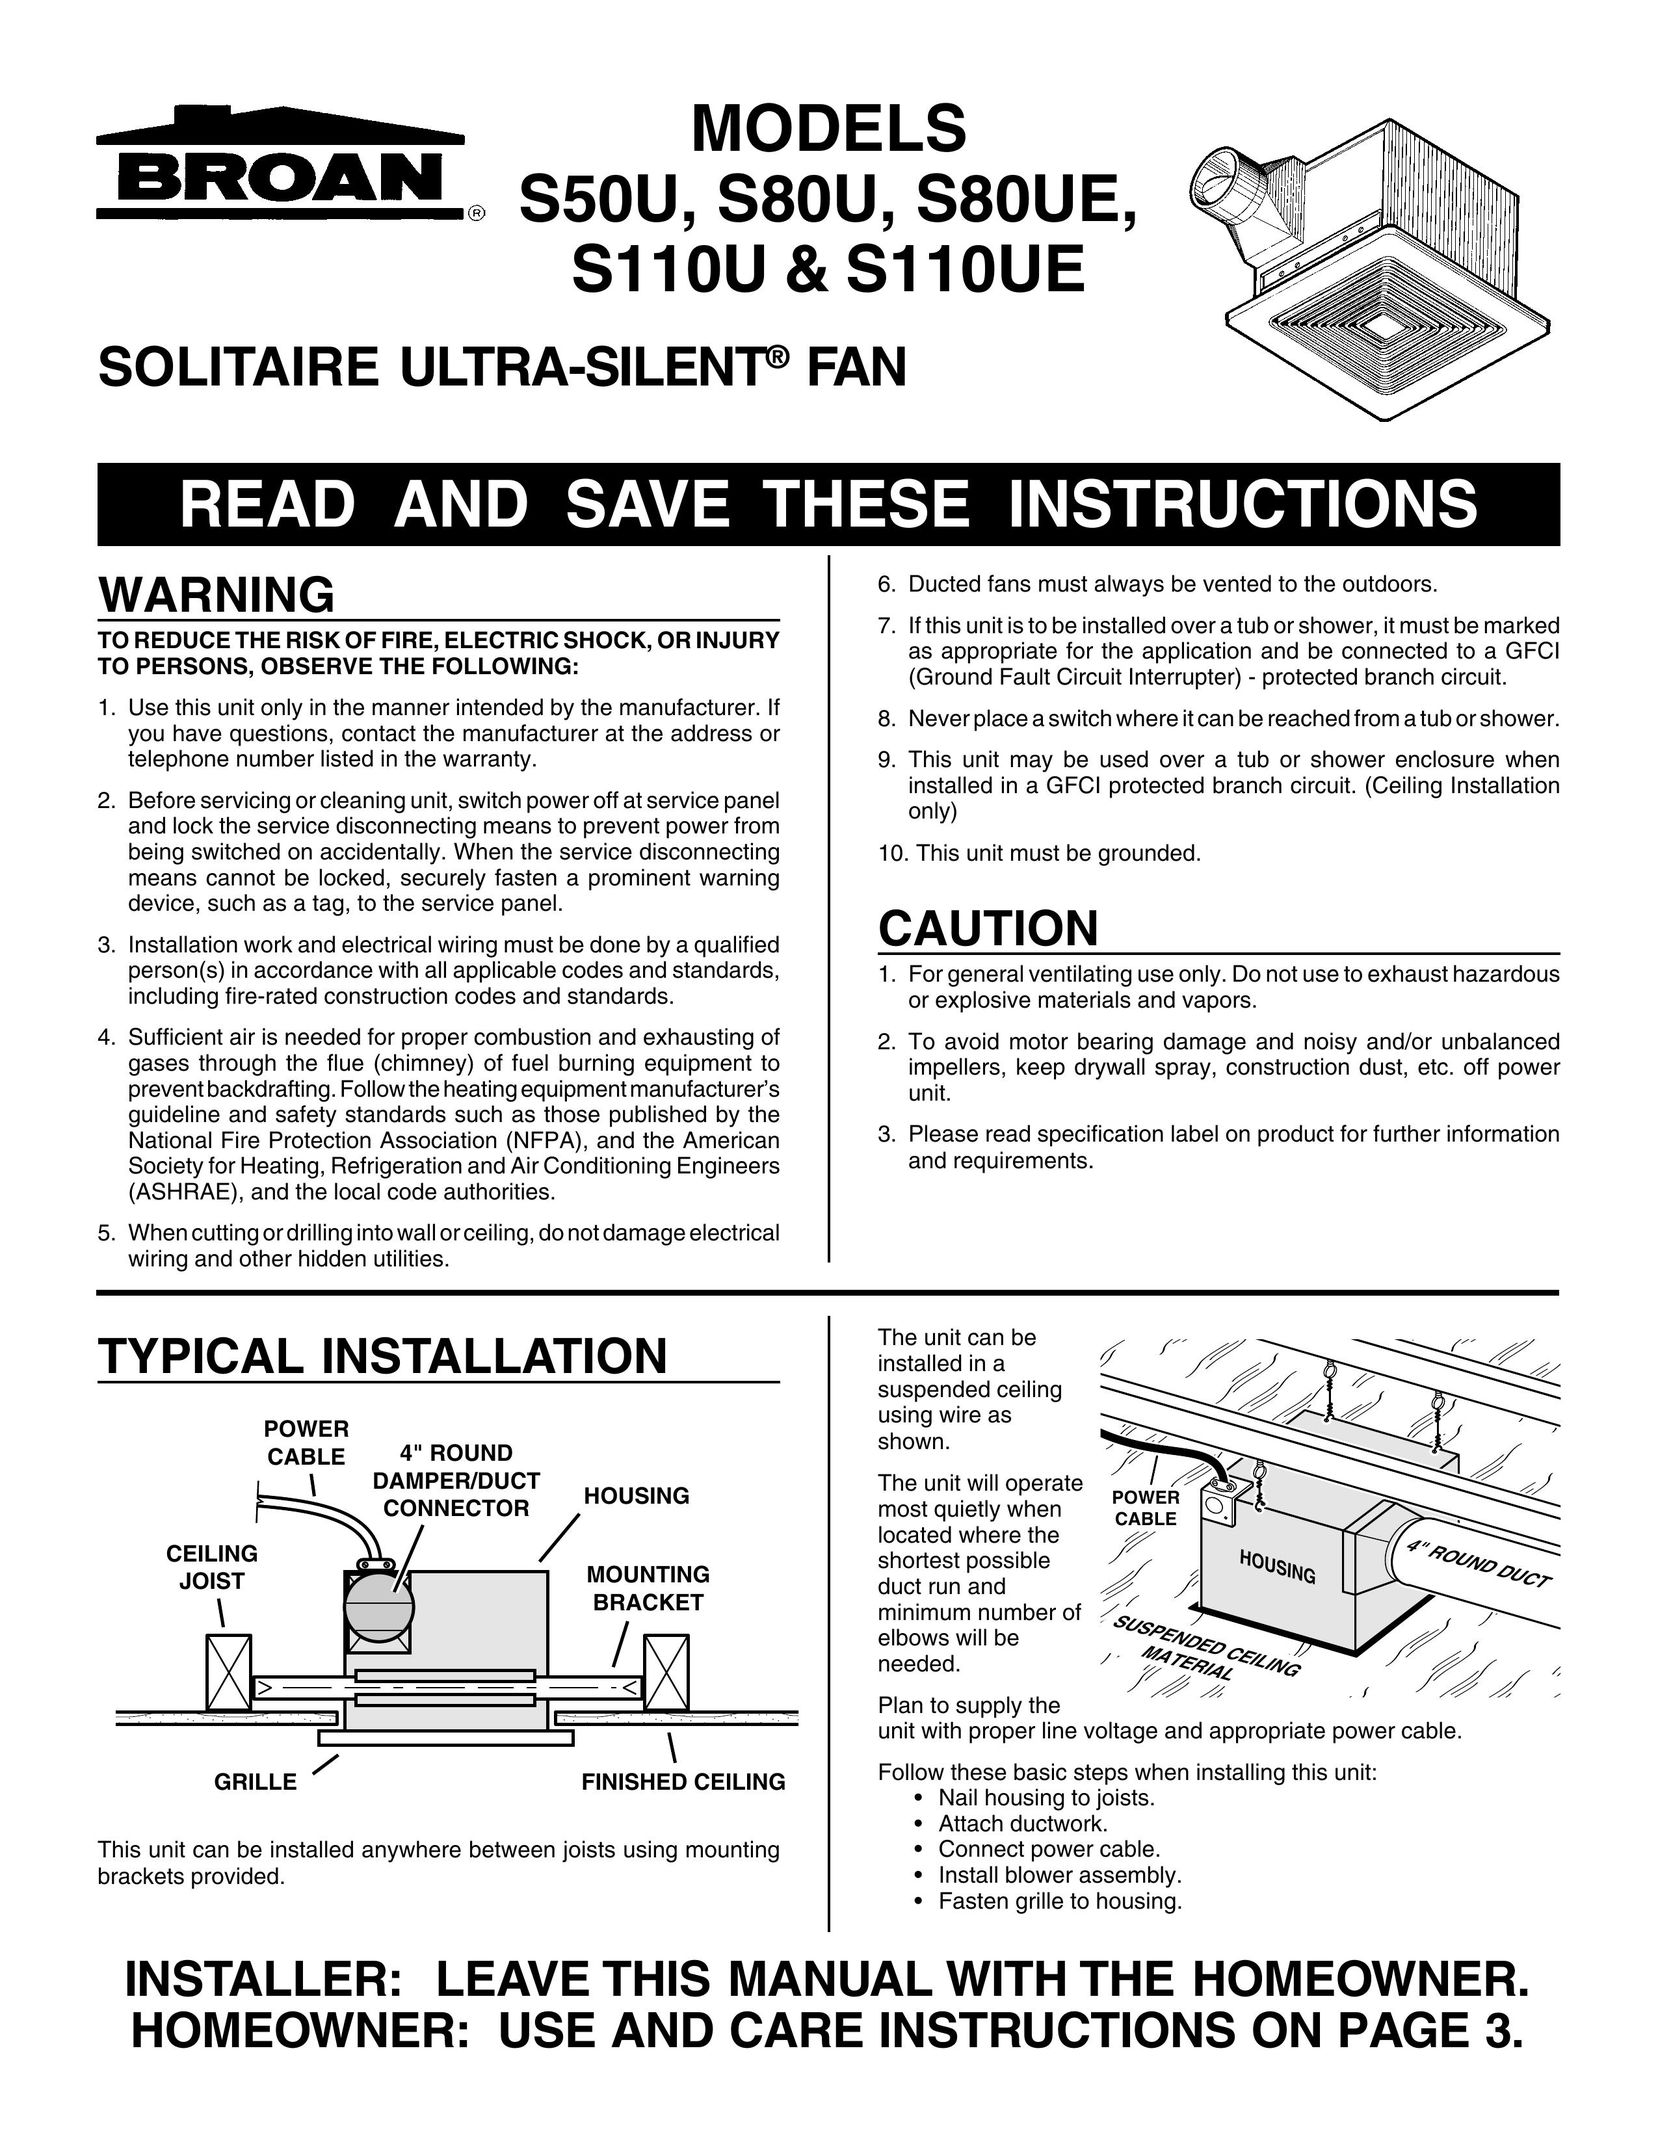 Broan S110U Fan User Manual